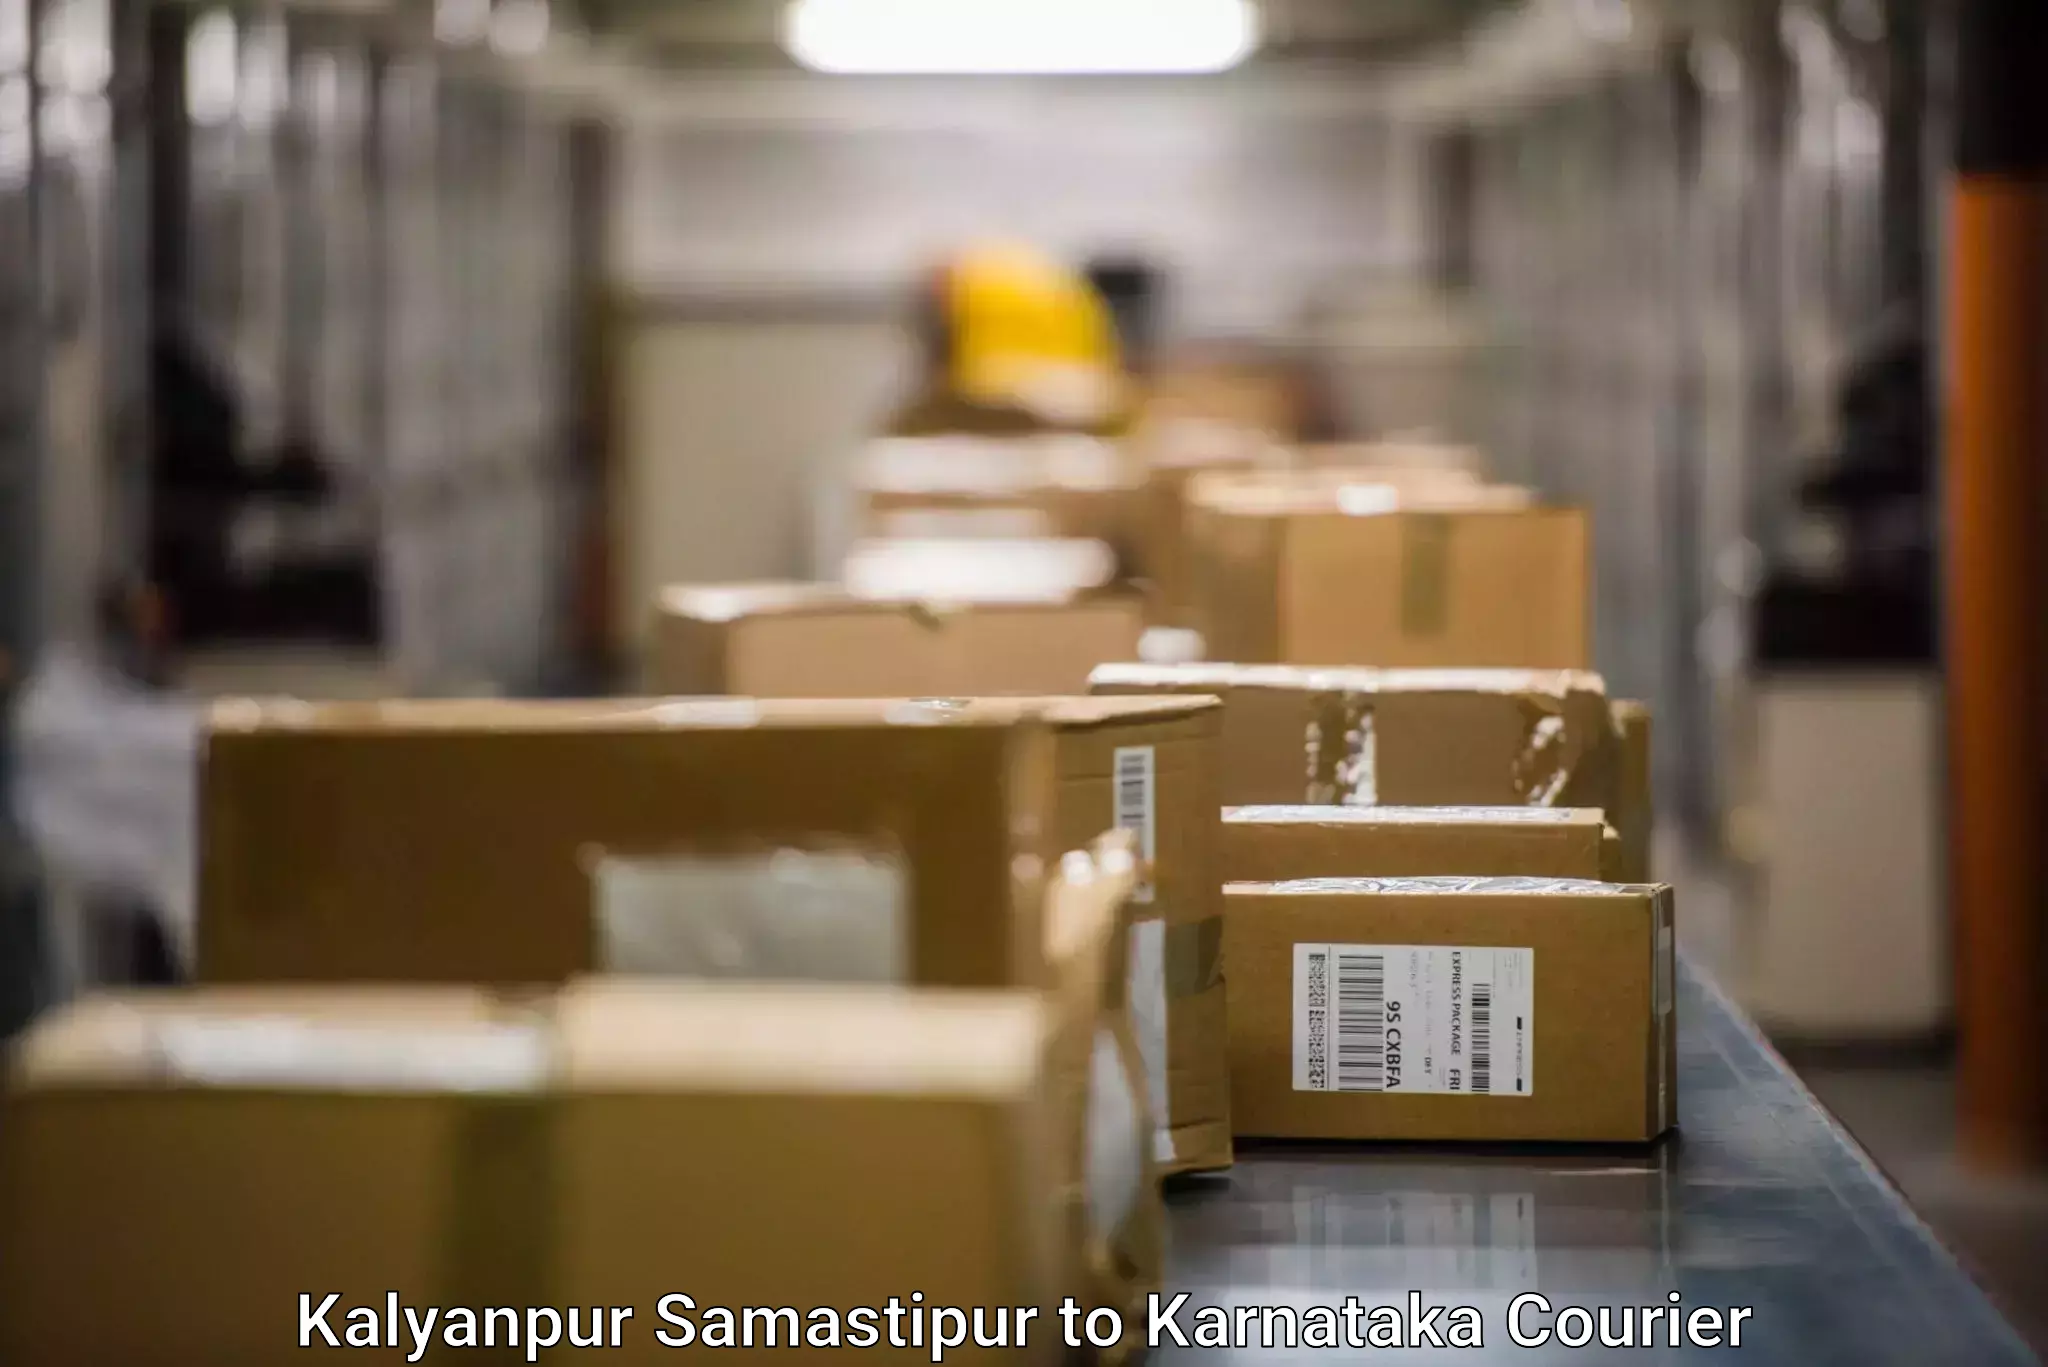 Modern delivery methods Kalyanpur Samastipur to Navalgund